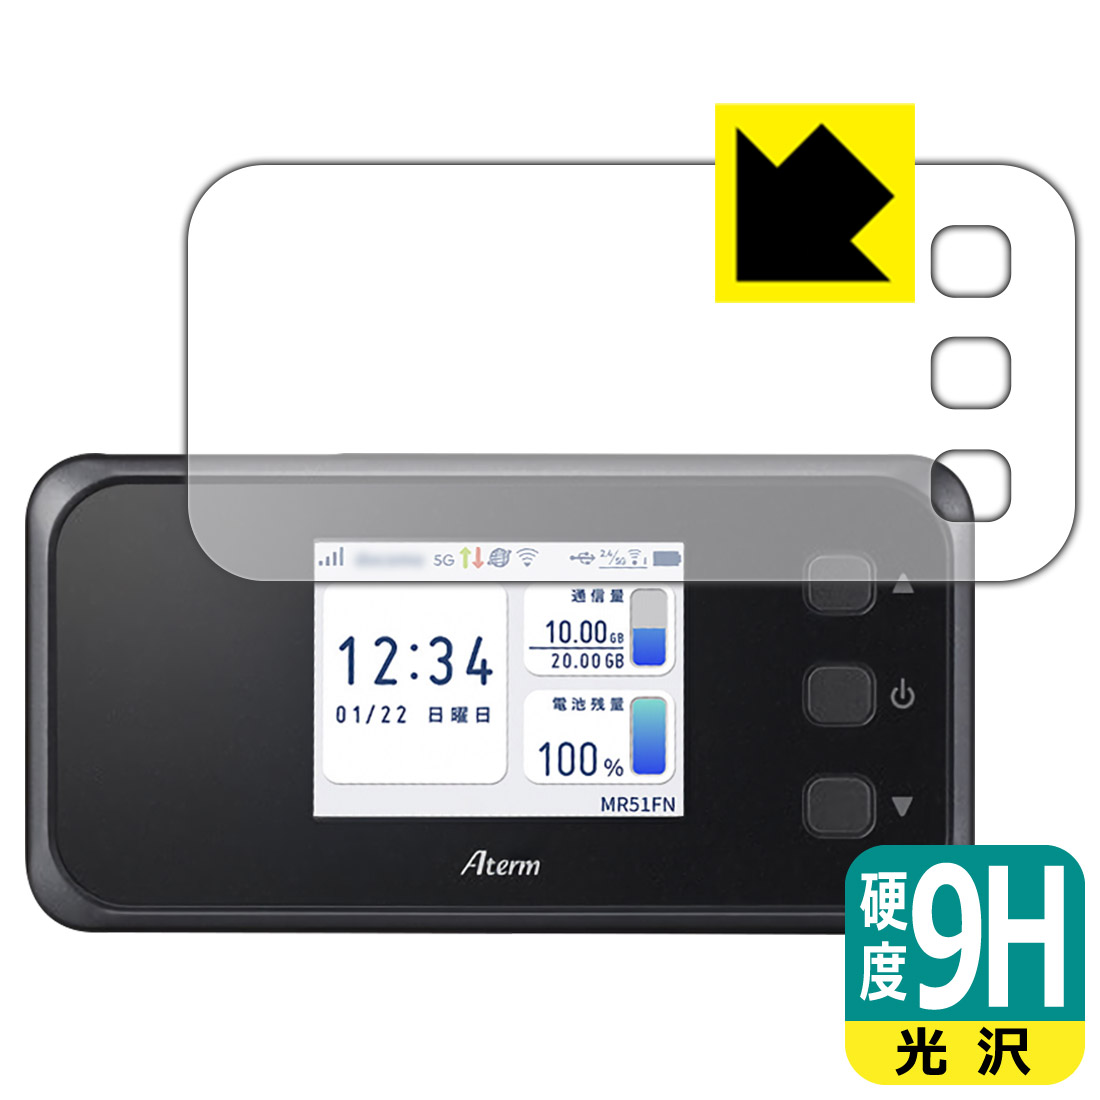 PDA工房 Aterm MR51FN対応 9H高硬度[光沢] 保護 フィルム [画面用] 日本製 自社製造直販